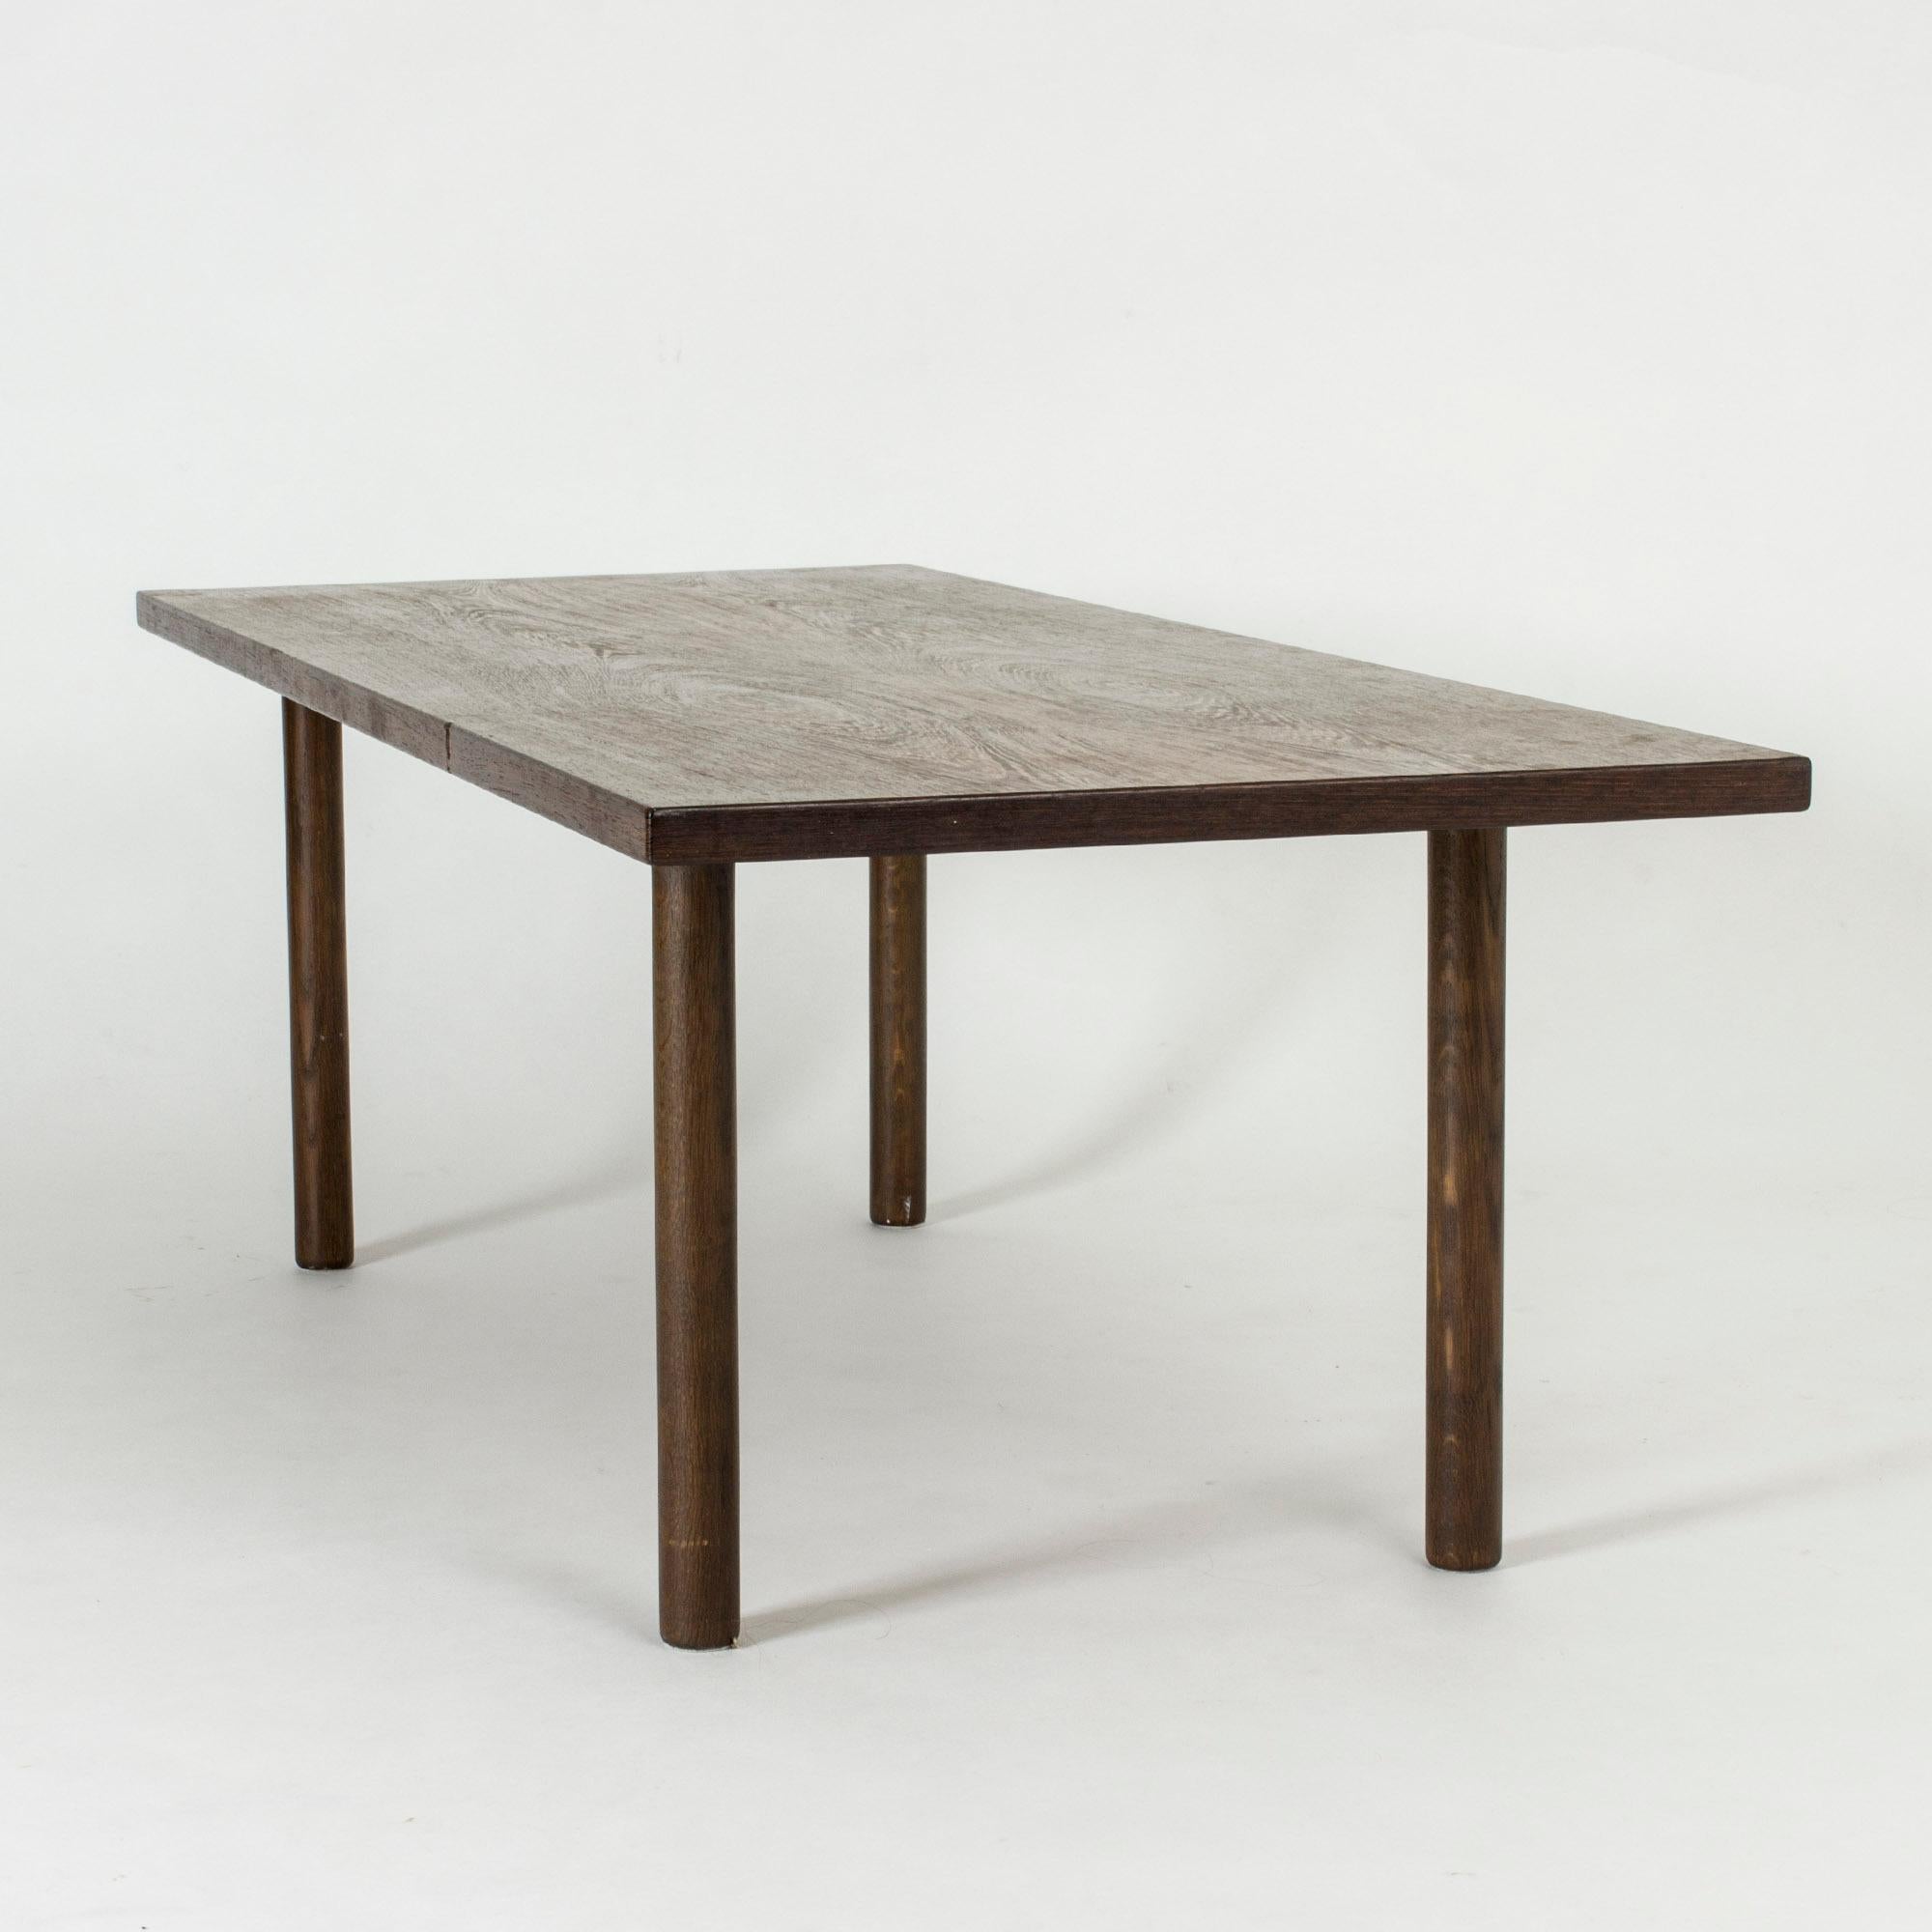 Table basse de Hans J. Wegner, au design épuré et équilibré. Plateau de table en wengé et pieds ronds en chêne teinté.